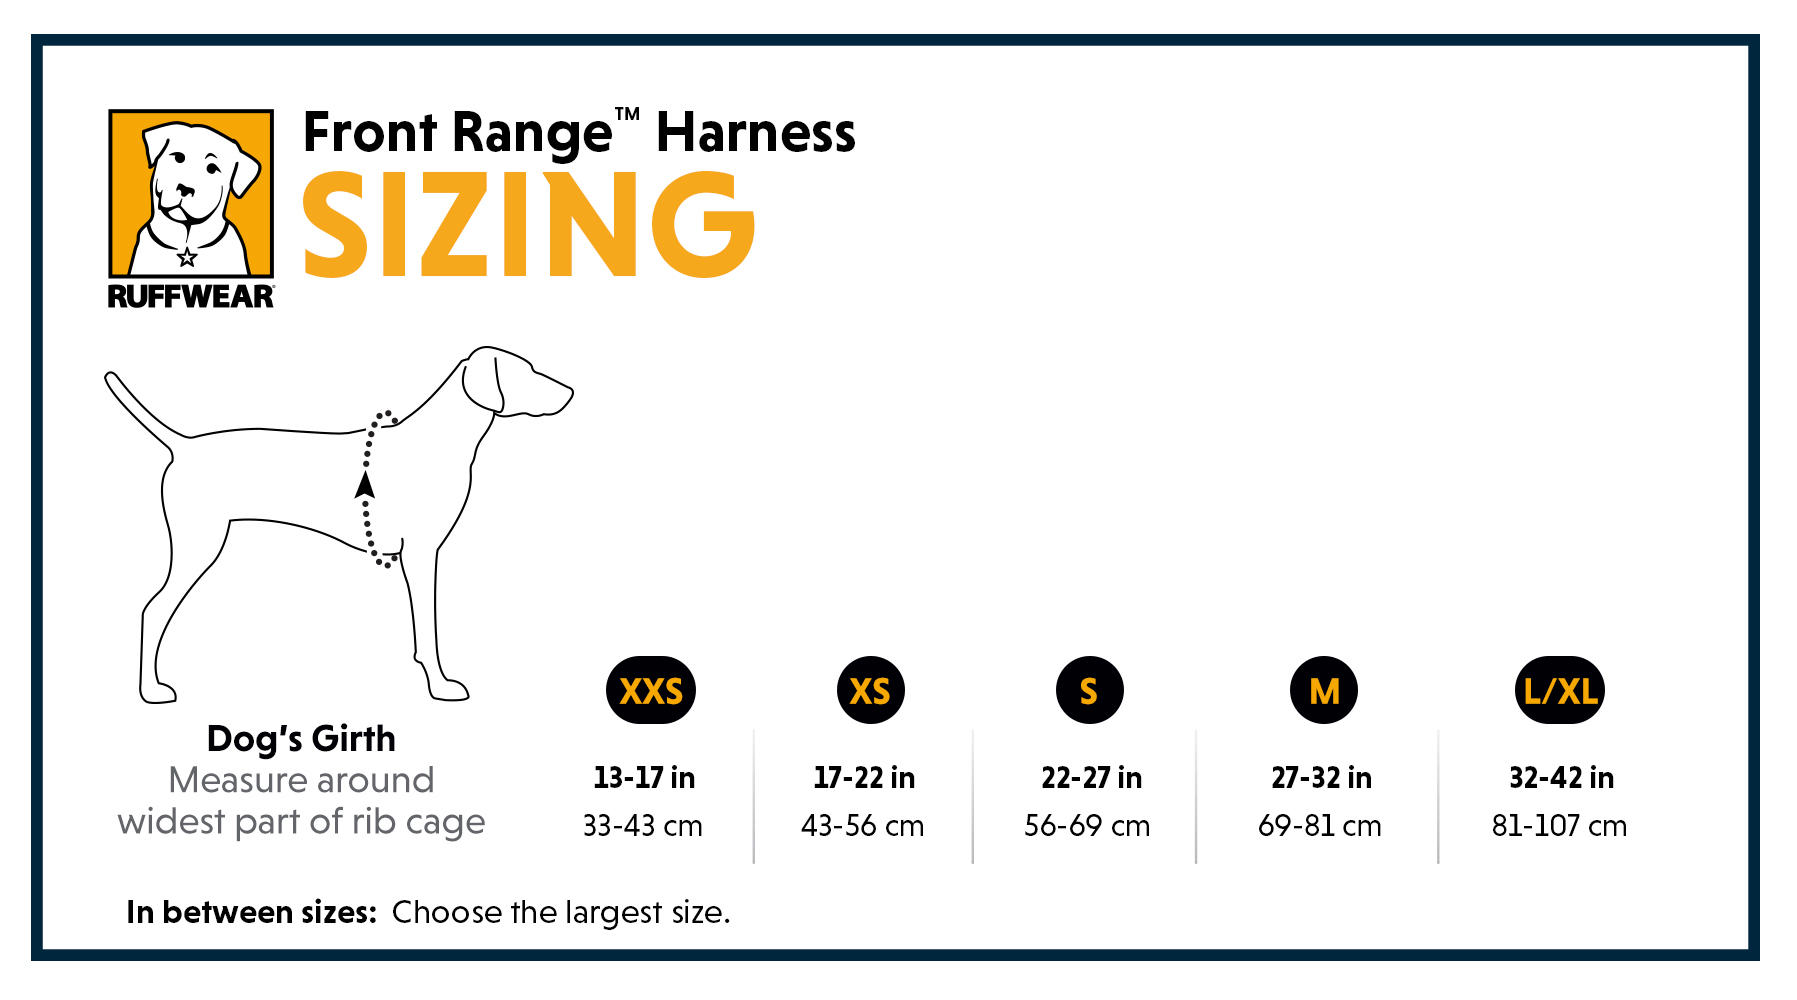 Ruffwear Front Range Harness Size Guide